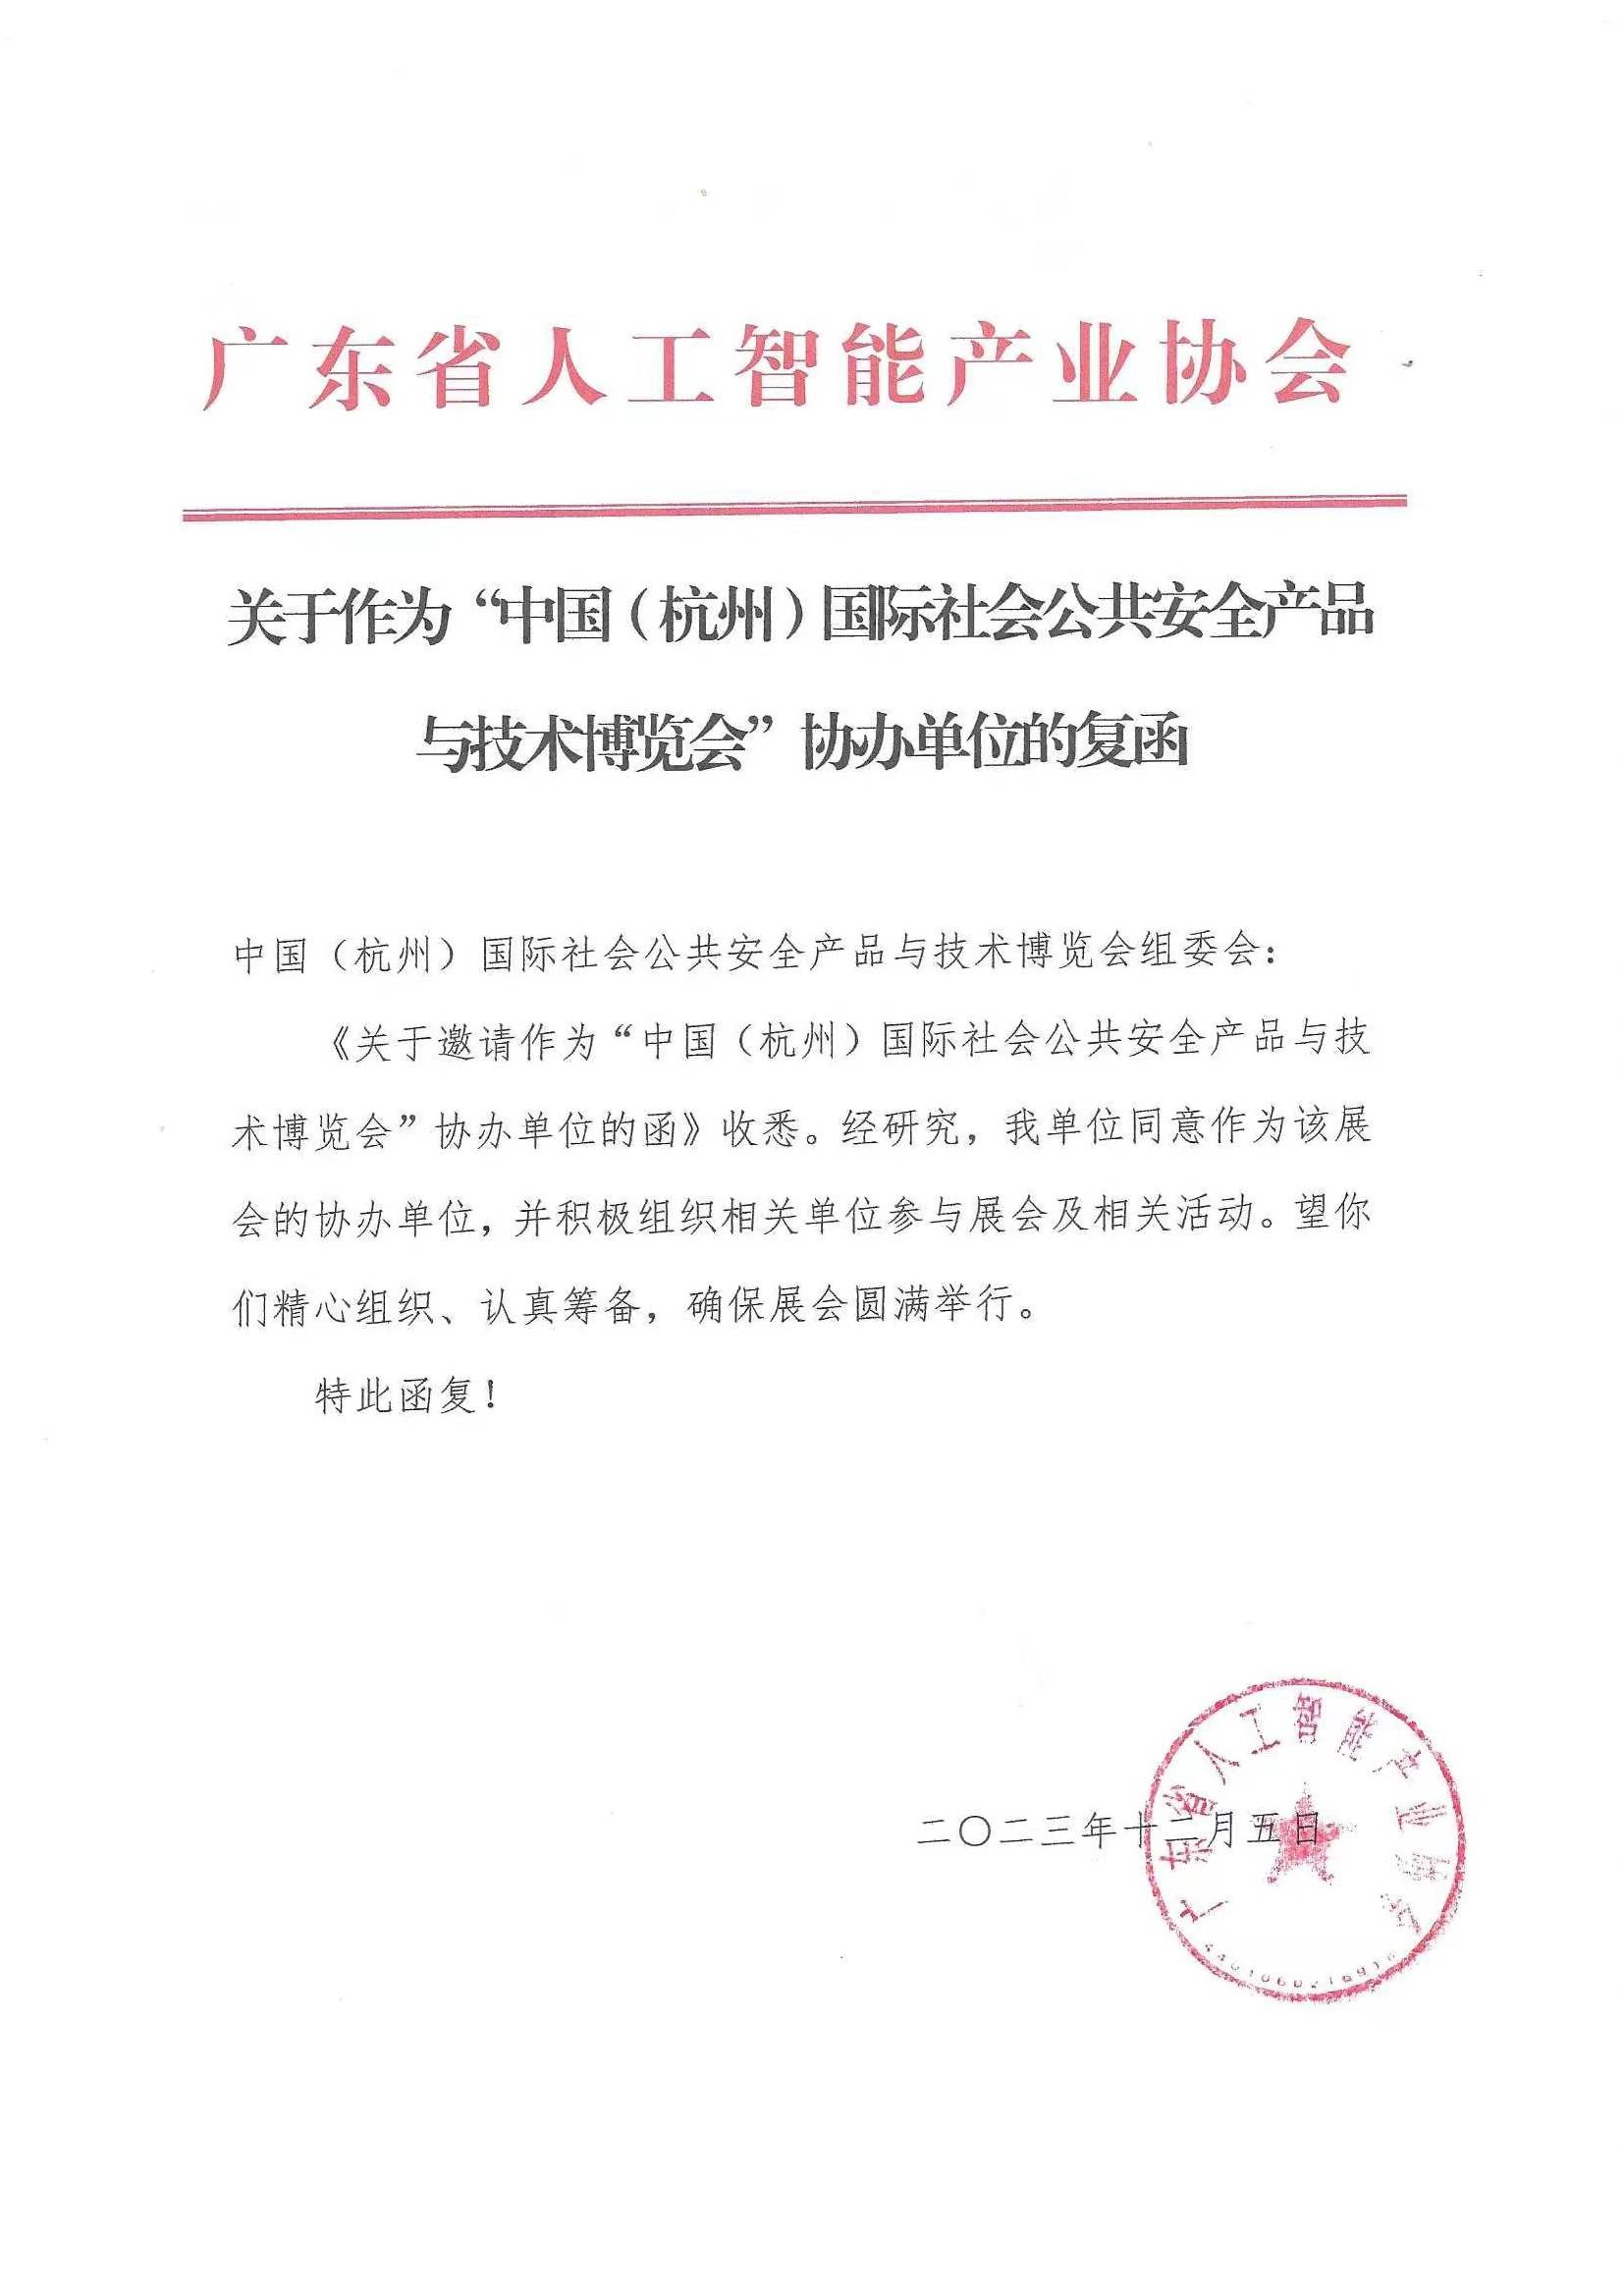 广东省人工智能产业协会复函成为7月2527日第13届杭州安博会协办单位